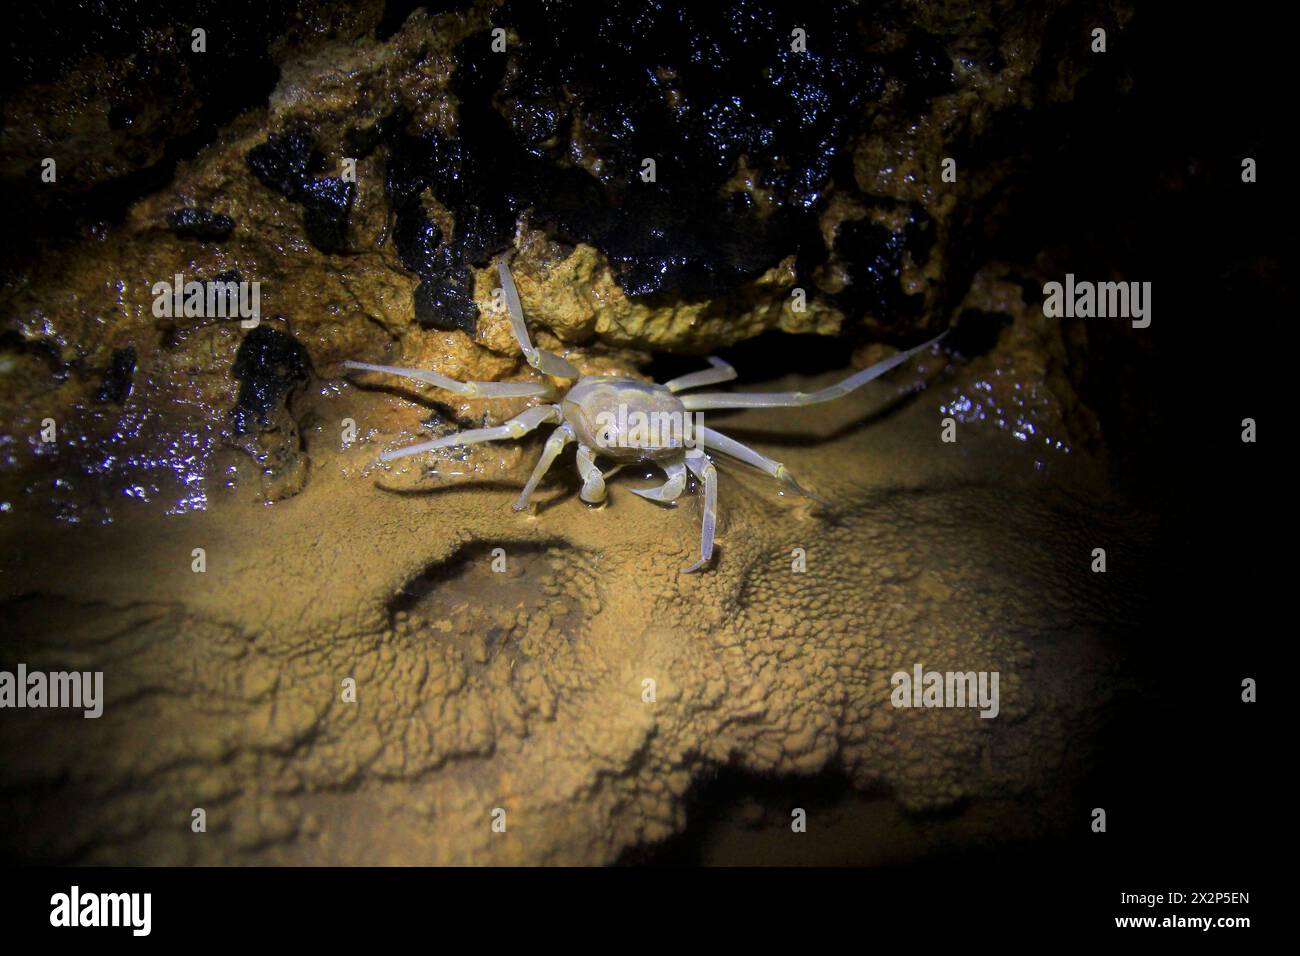 Sesarmoides Jacobsoni, eine Höhlenbiota, die im Karstgebiet von Gunung Sewu lebt. Diese Art von Krabben wurde erstmals 1911 von Edward Jacobson entdeckt. Stockfoto